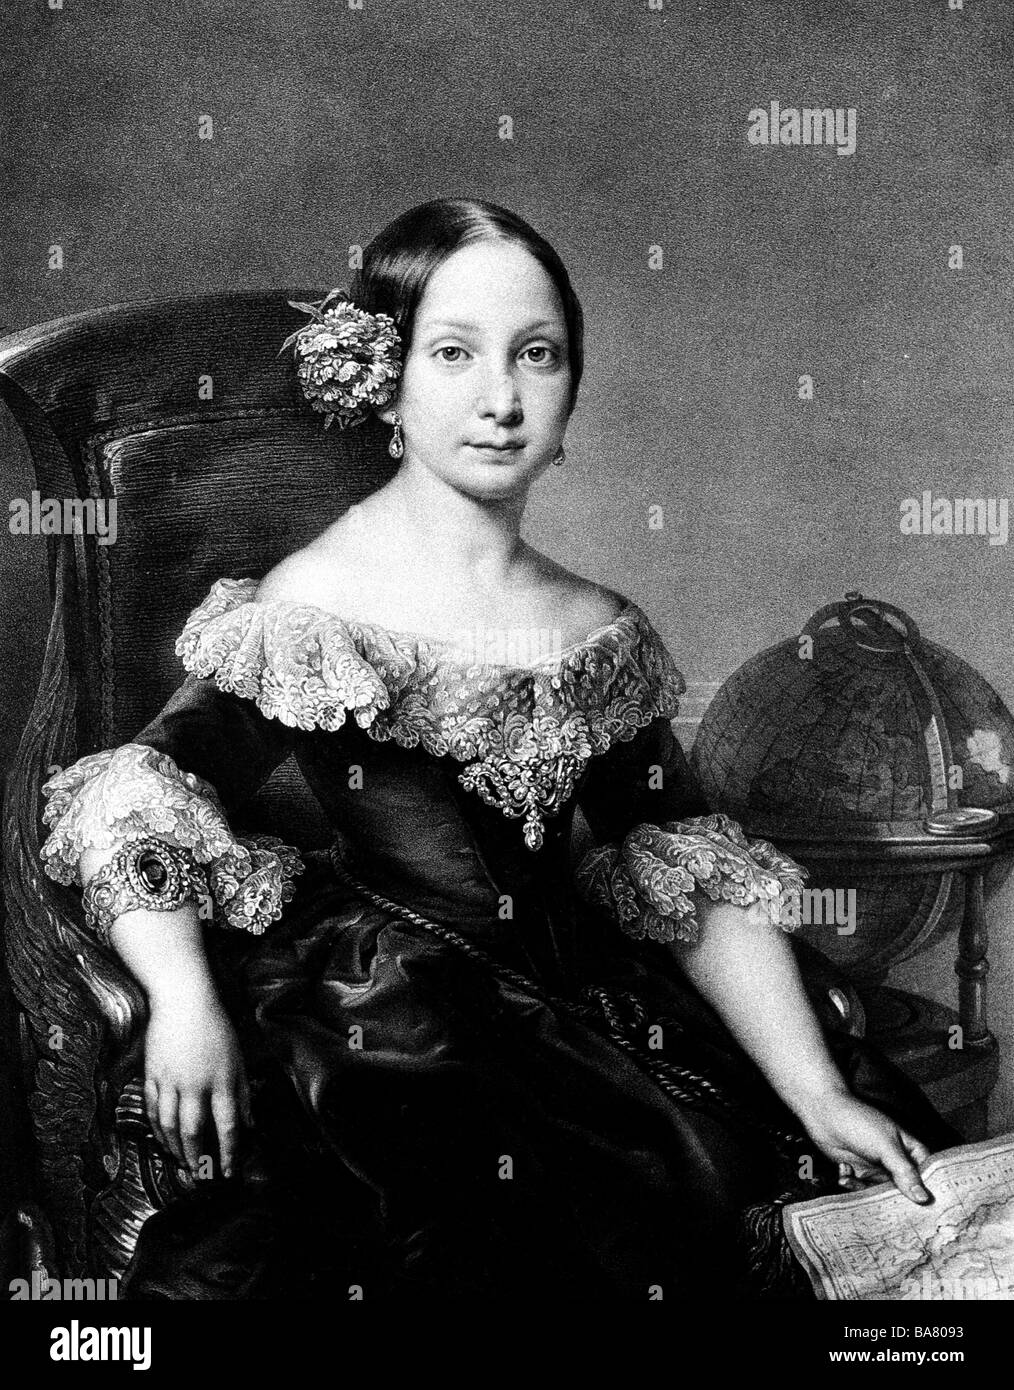 Isella II., 10.10.1830 - 9.4. 1904/05, Königin von Spanien 29.9.181 - 30.9.282, halbe Länge, nach der Malerei, ca. Stockfoto